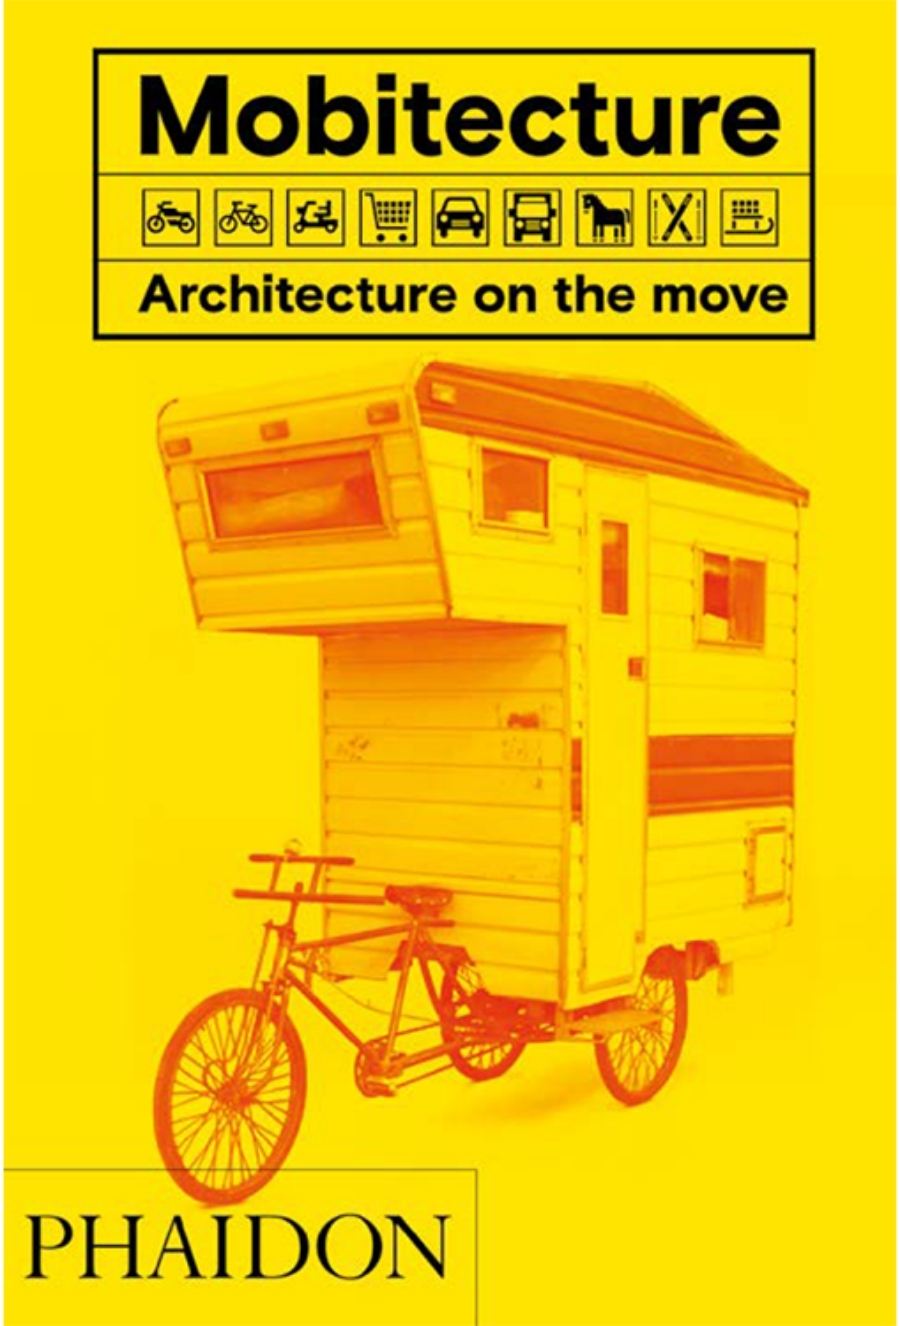 imagen 15 de Dos libros para celebrar el mes de la arquitectura.